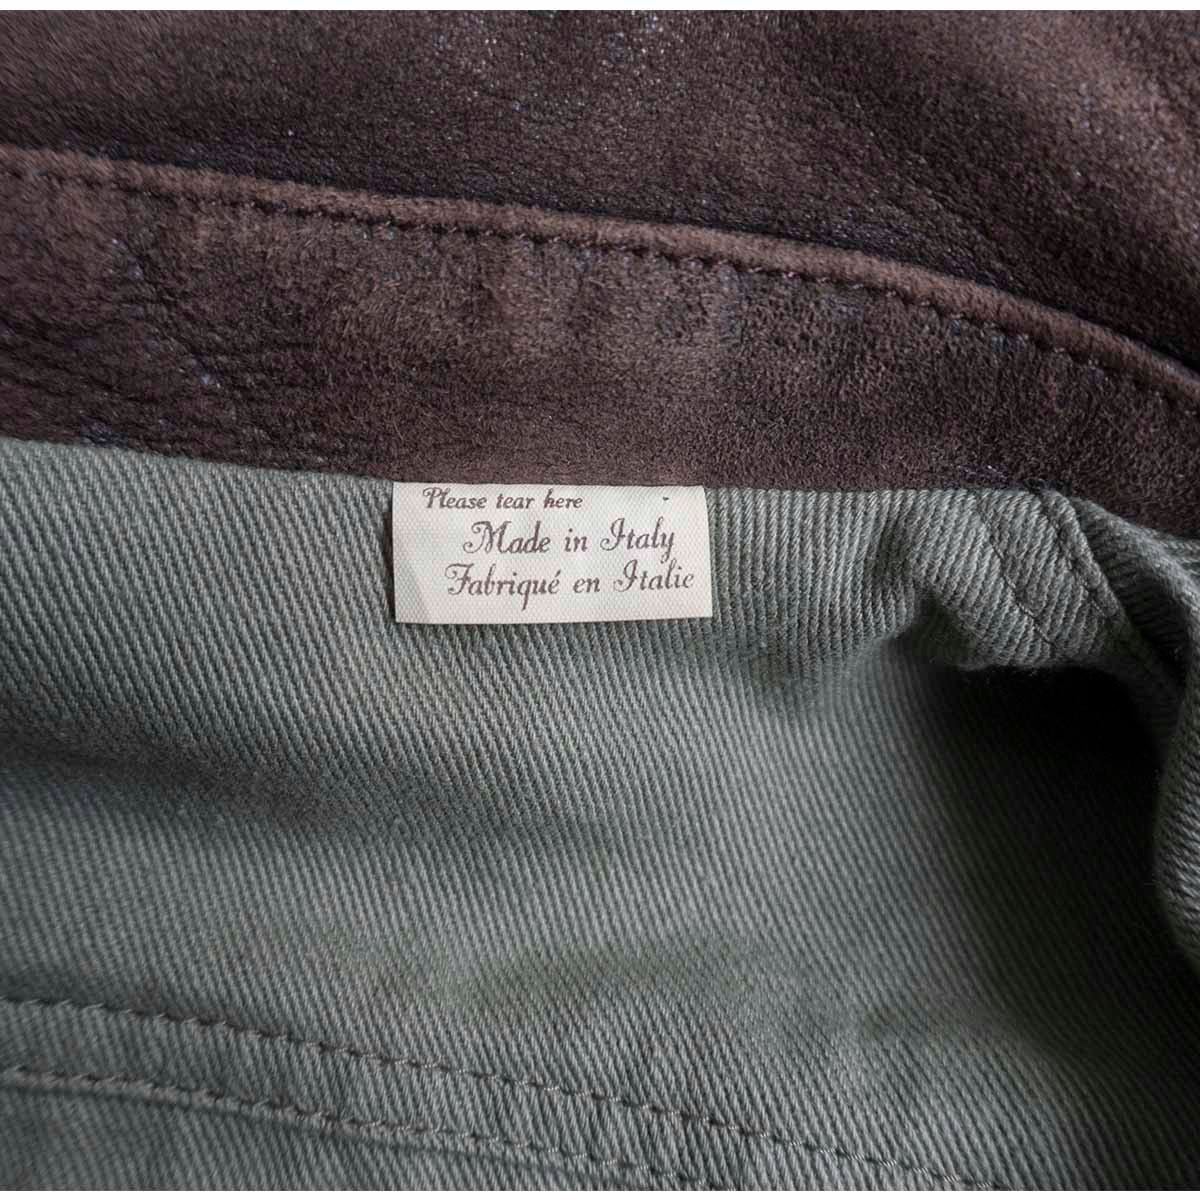 【イタリア製】LEVI'S VINTAGE CLOTHING【1940's Leather Jkt Reversible】L 羊革 レザー ジャケット ヴィンテージ加工 LVC 2210231_画像5